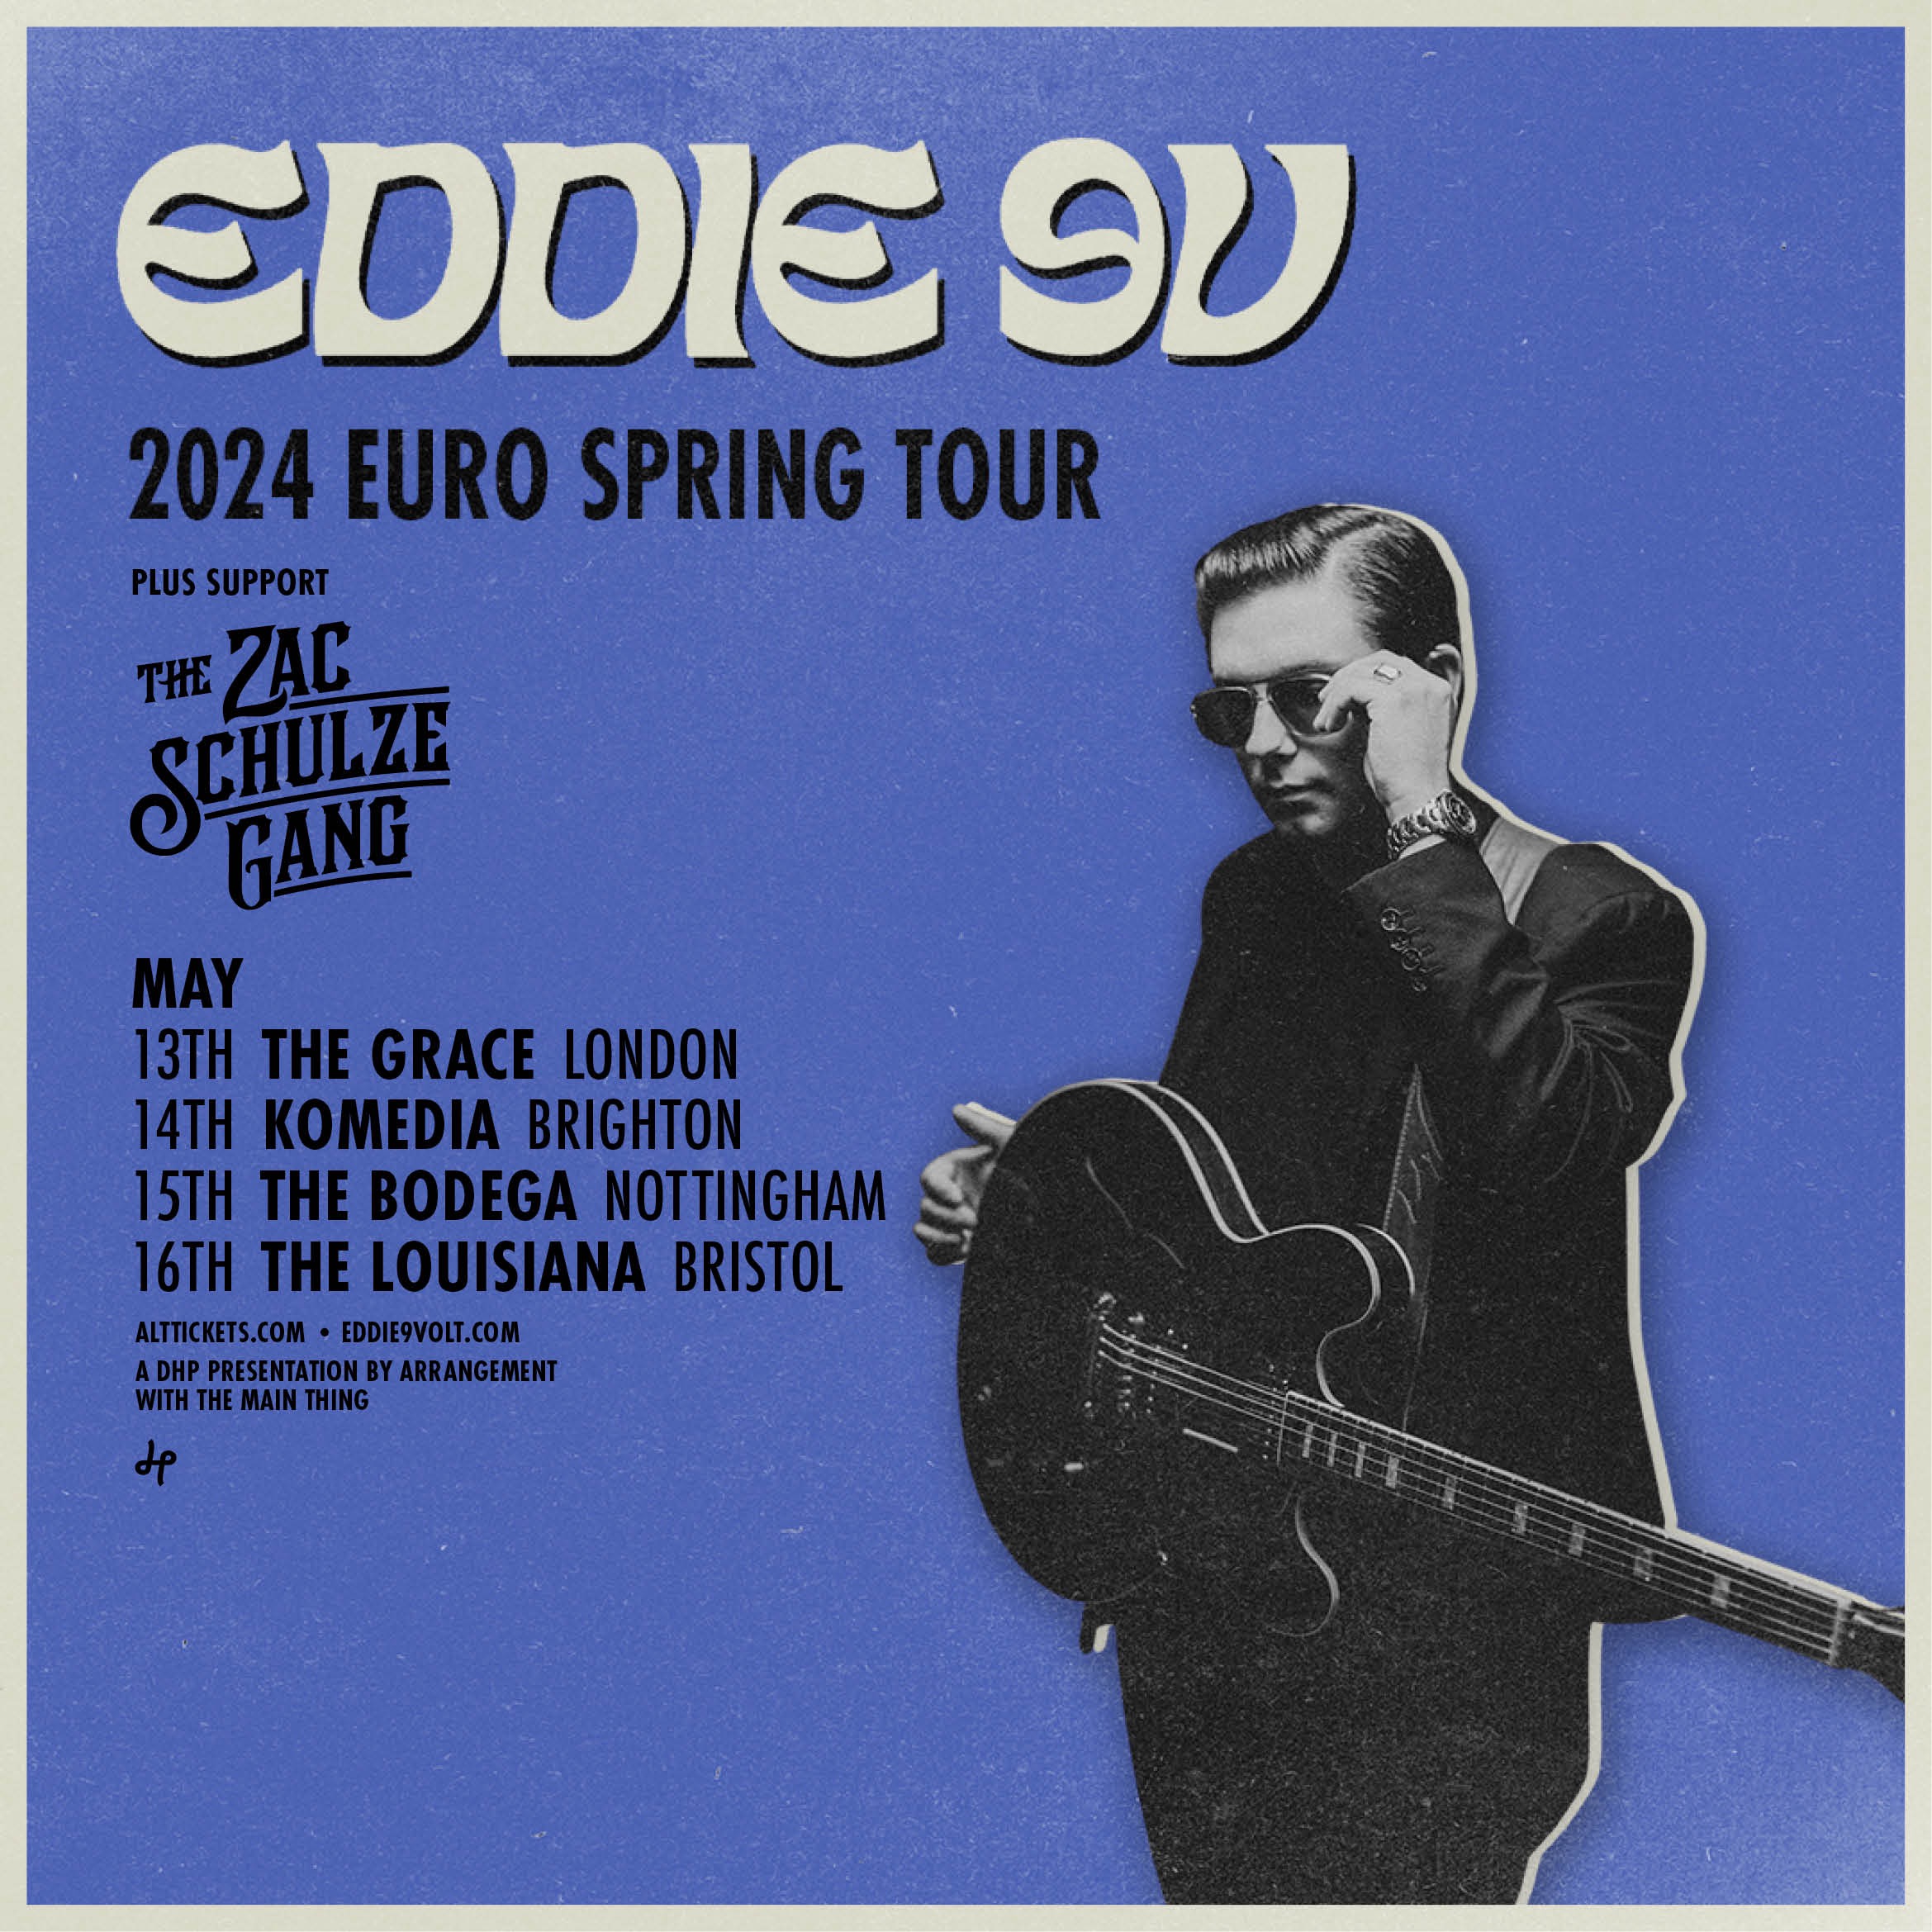 Eddie 9V Announces Euro Spring Tour